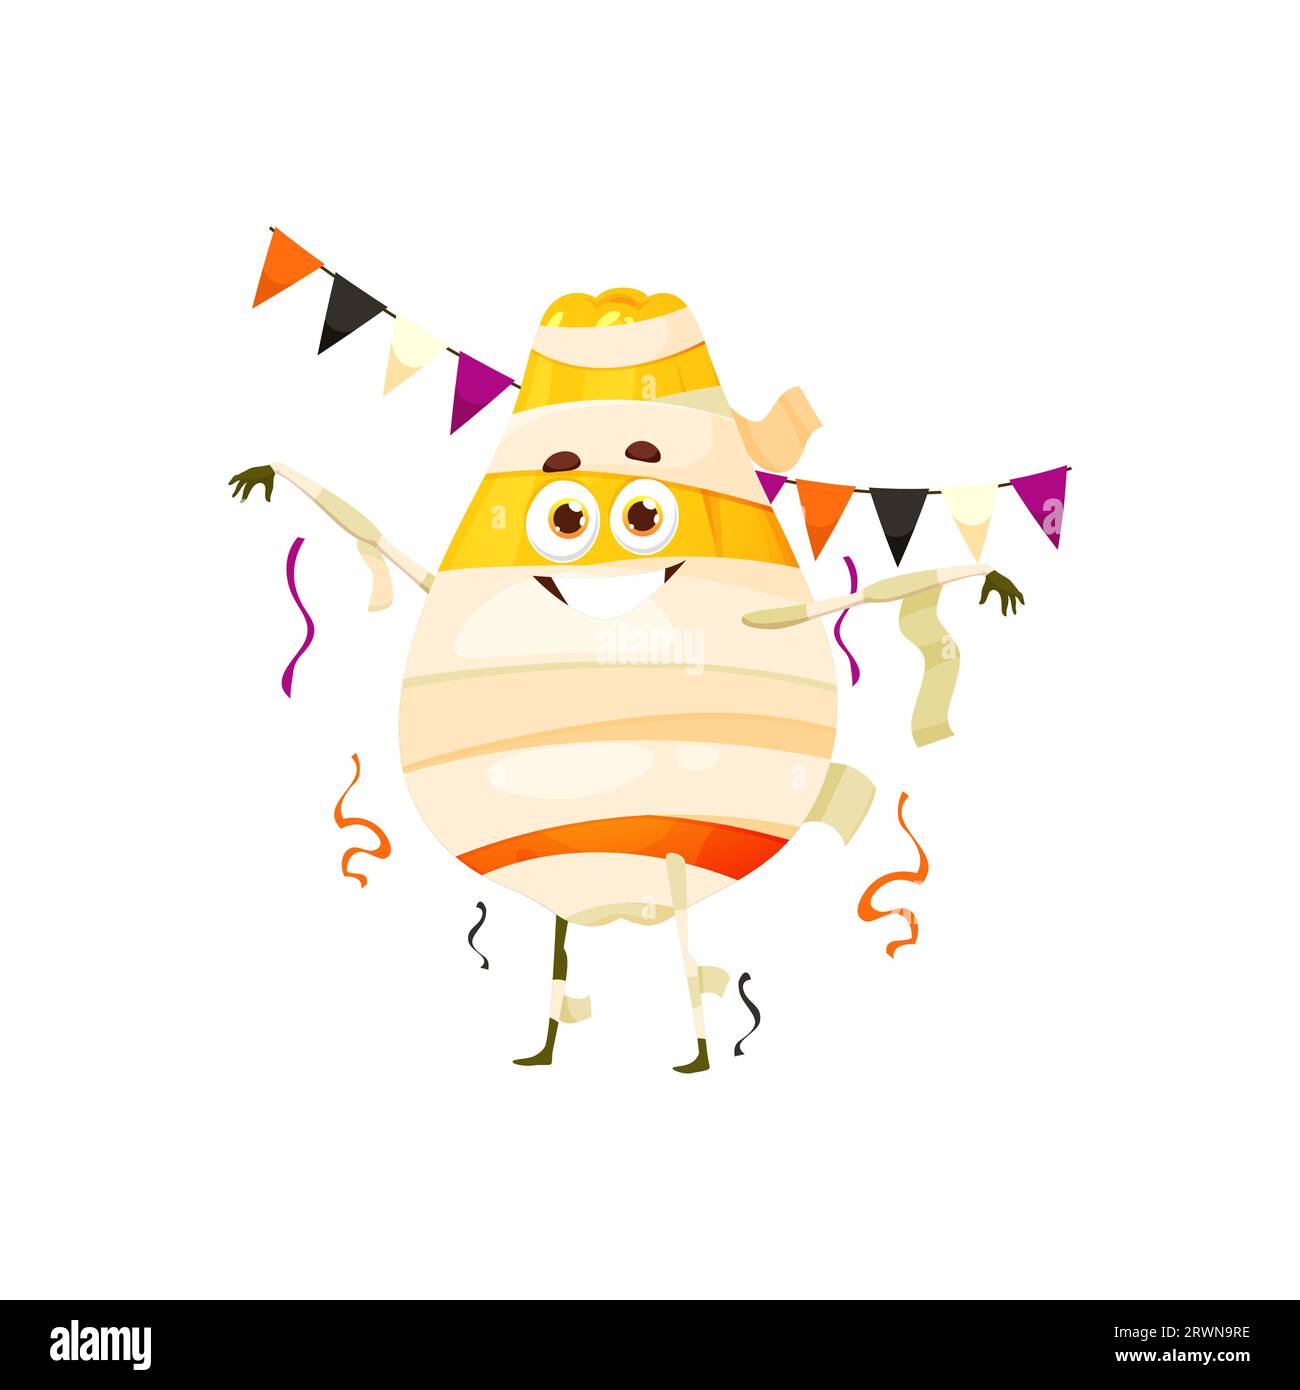 Comic lustige Halloween-Papaya-Frucht-Figur im Weihnachtskostüm der Mumie. Isolierte Vektorkomische tropische Lebensmittelpersönlichkeit verkörpert fruchtigen Humor mit seinem bandageumhüllten Charme und schelmischem Grinsen Stock Vektor